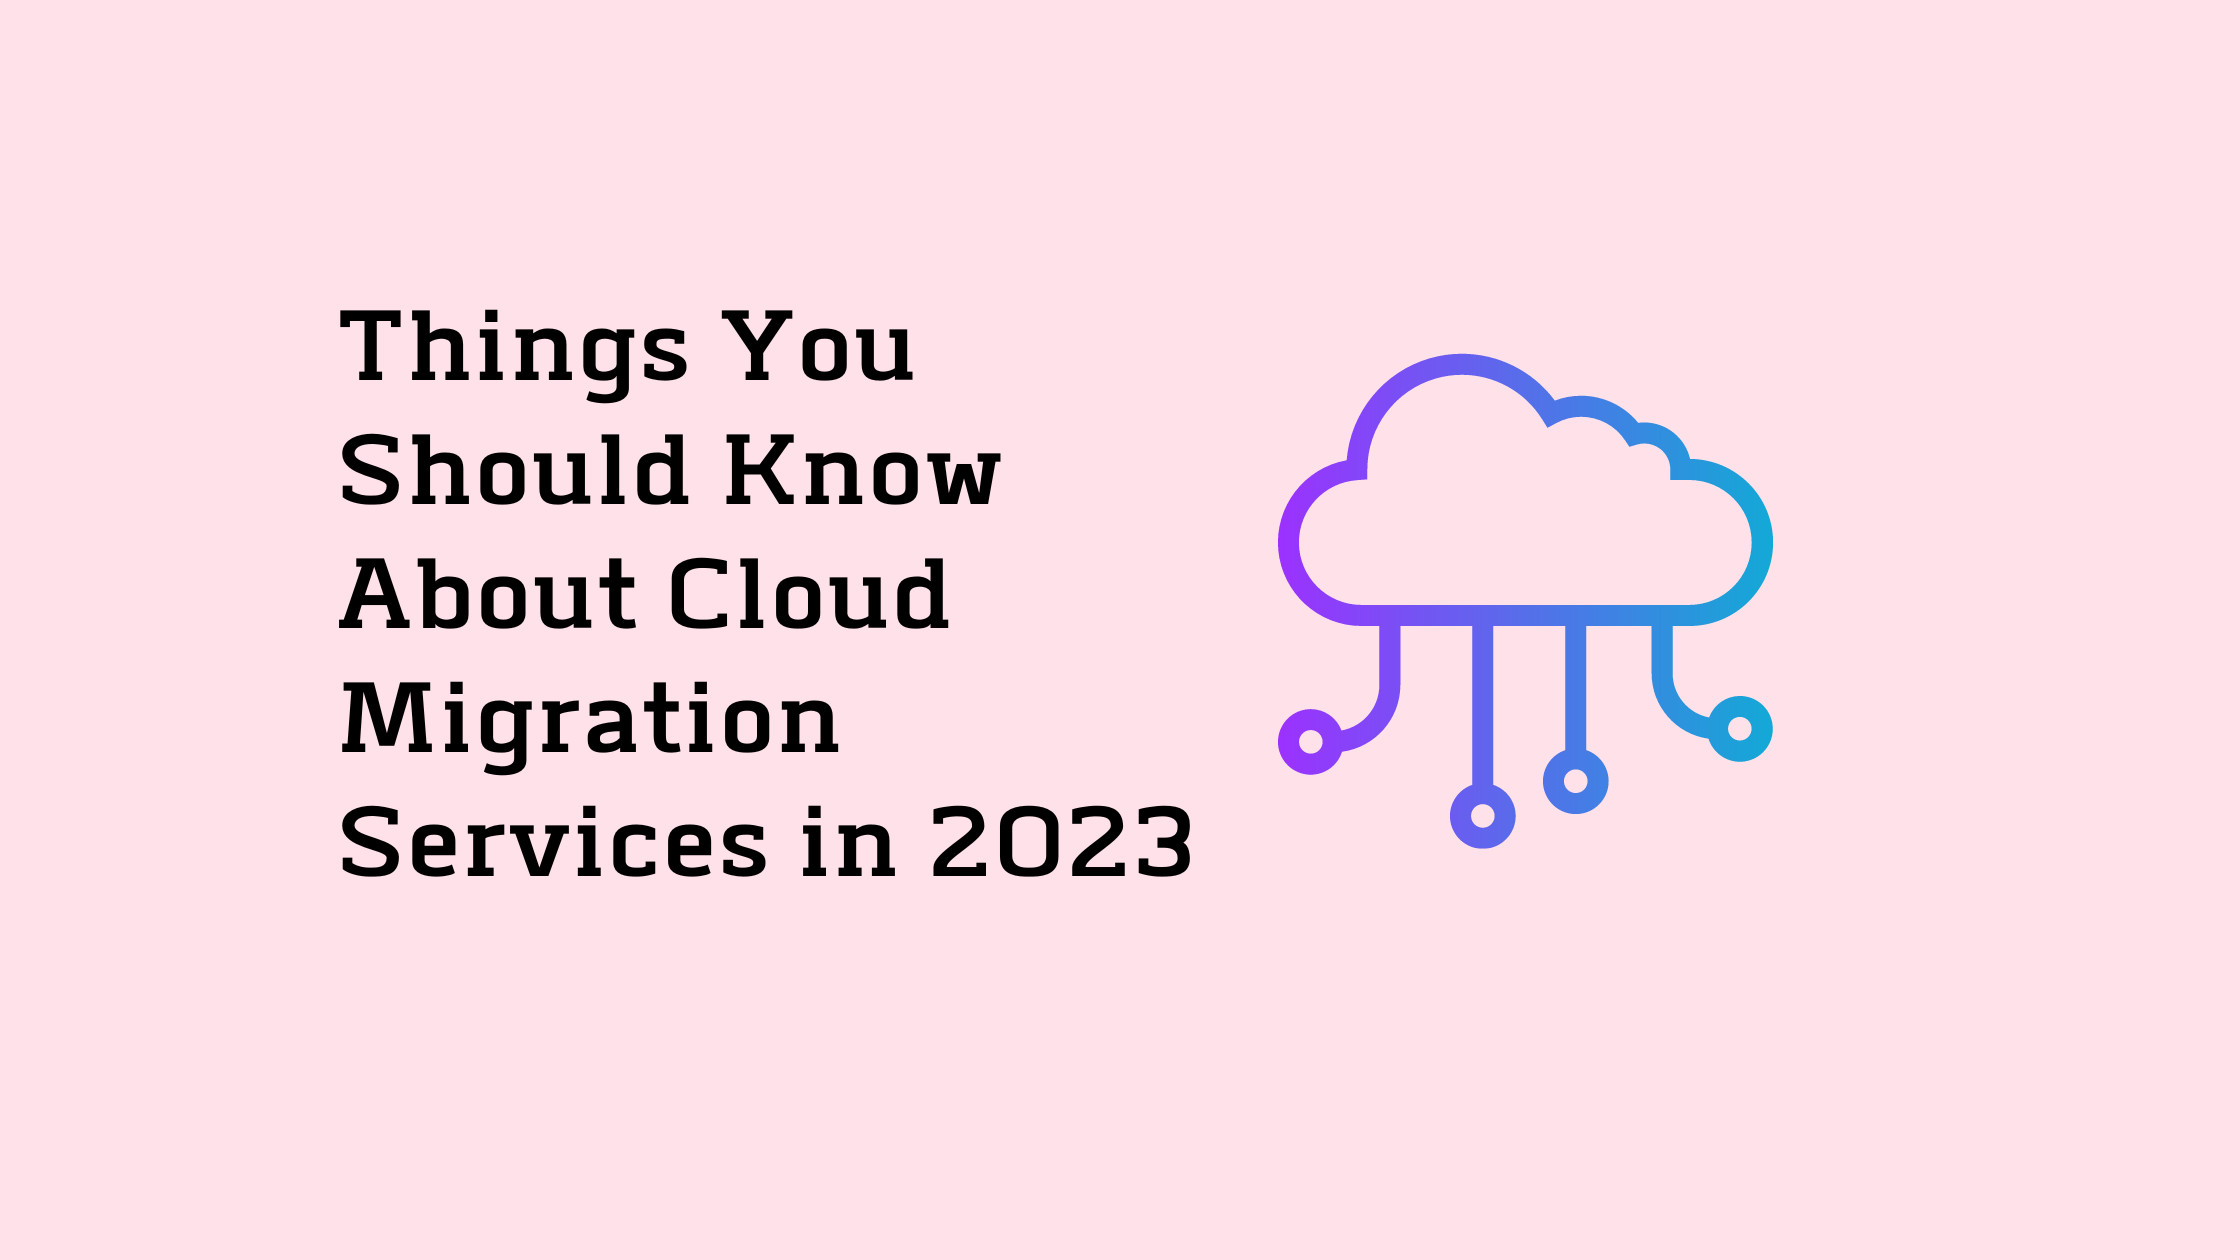 Cloud services